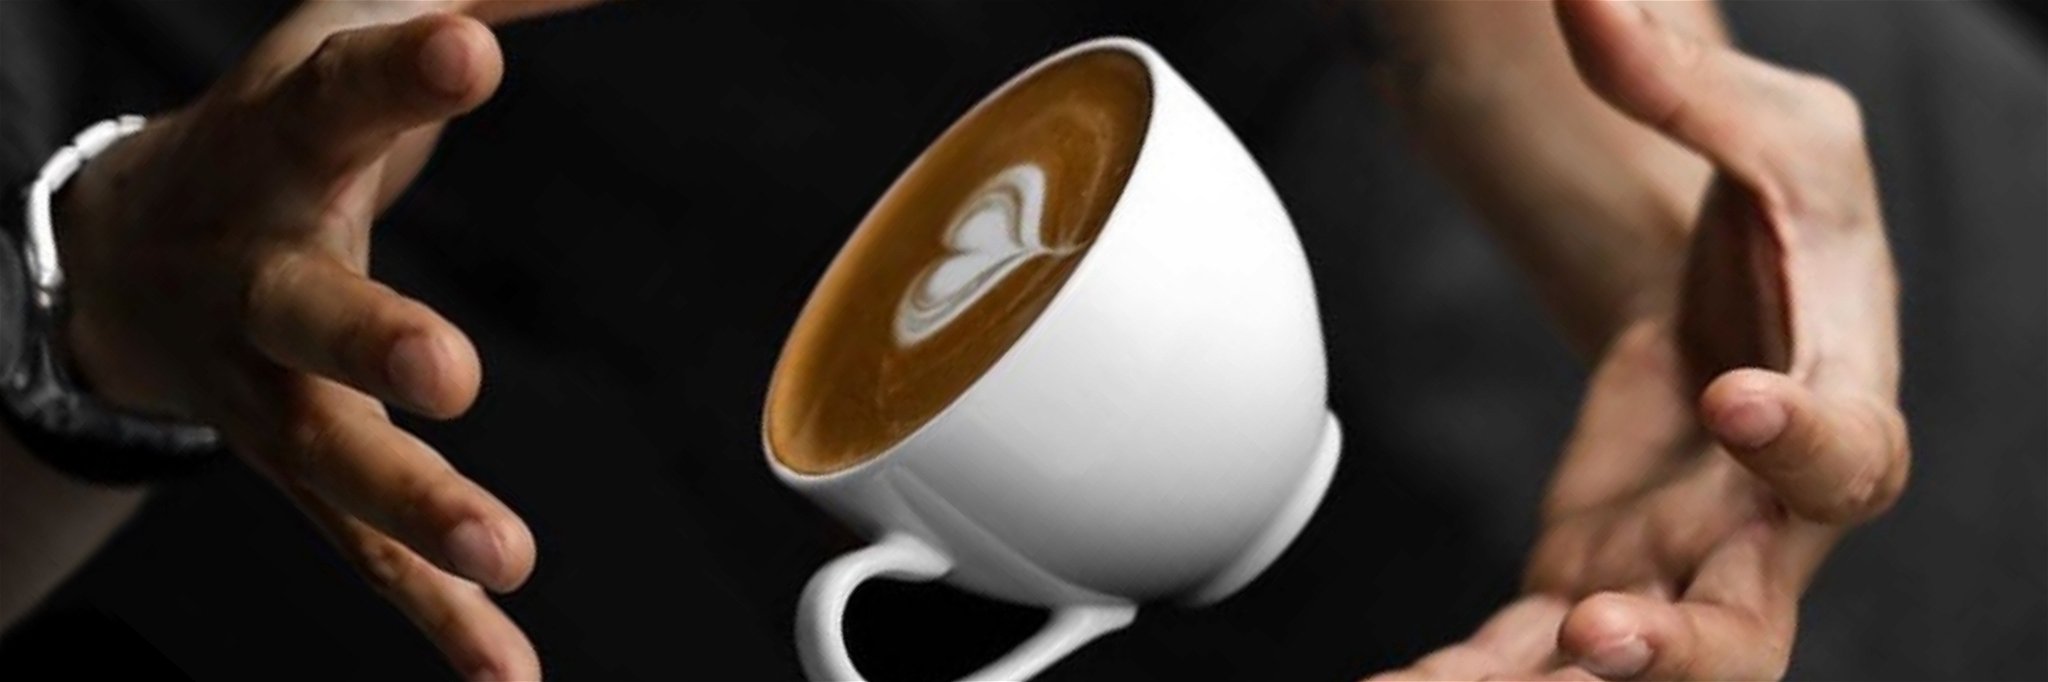 Kaffee – bald ein Luxusprodukt?